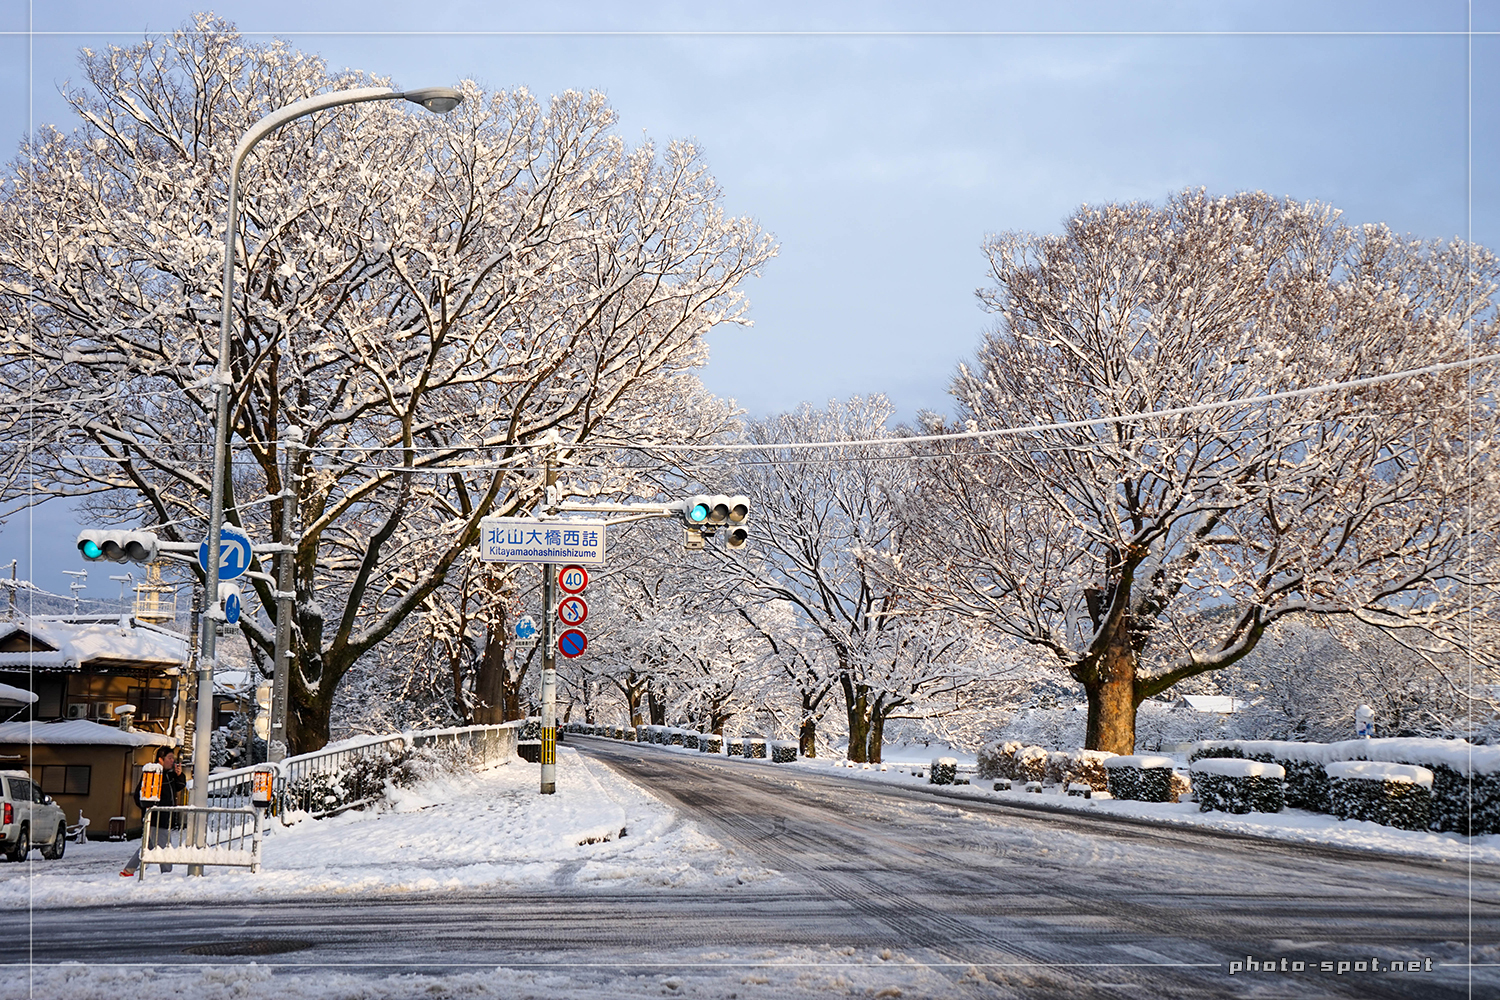 京都北山大橋西詰交差点の雪景色